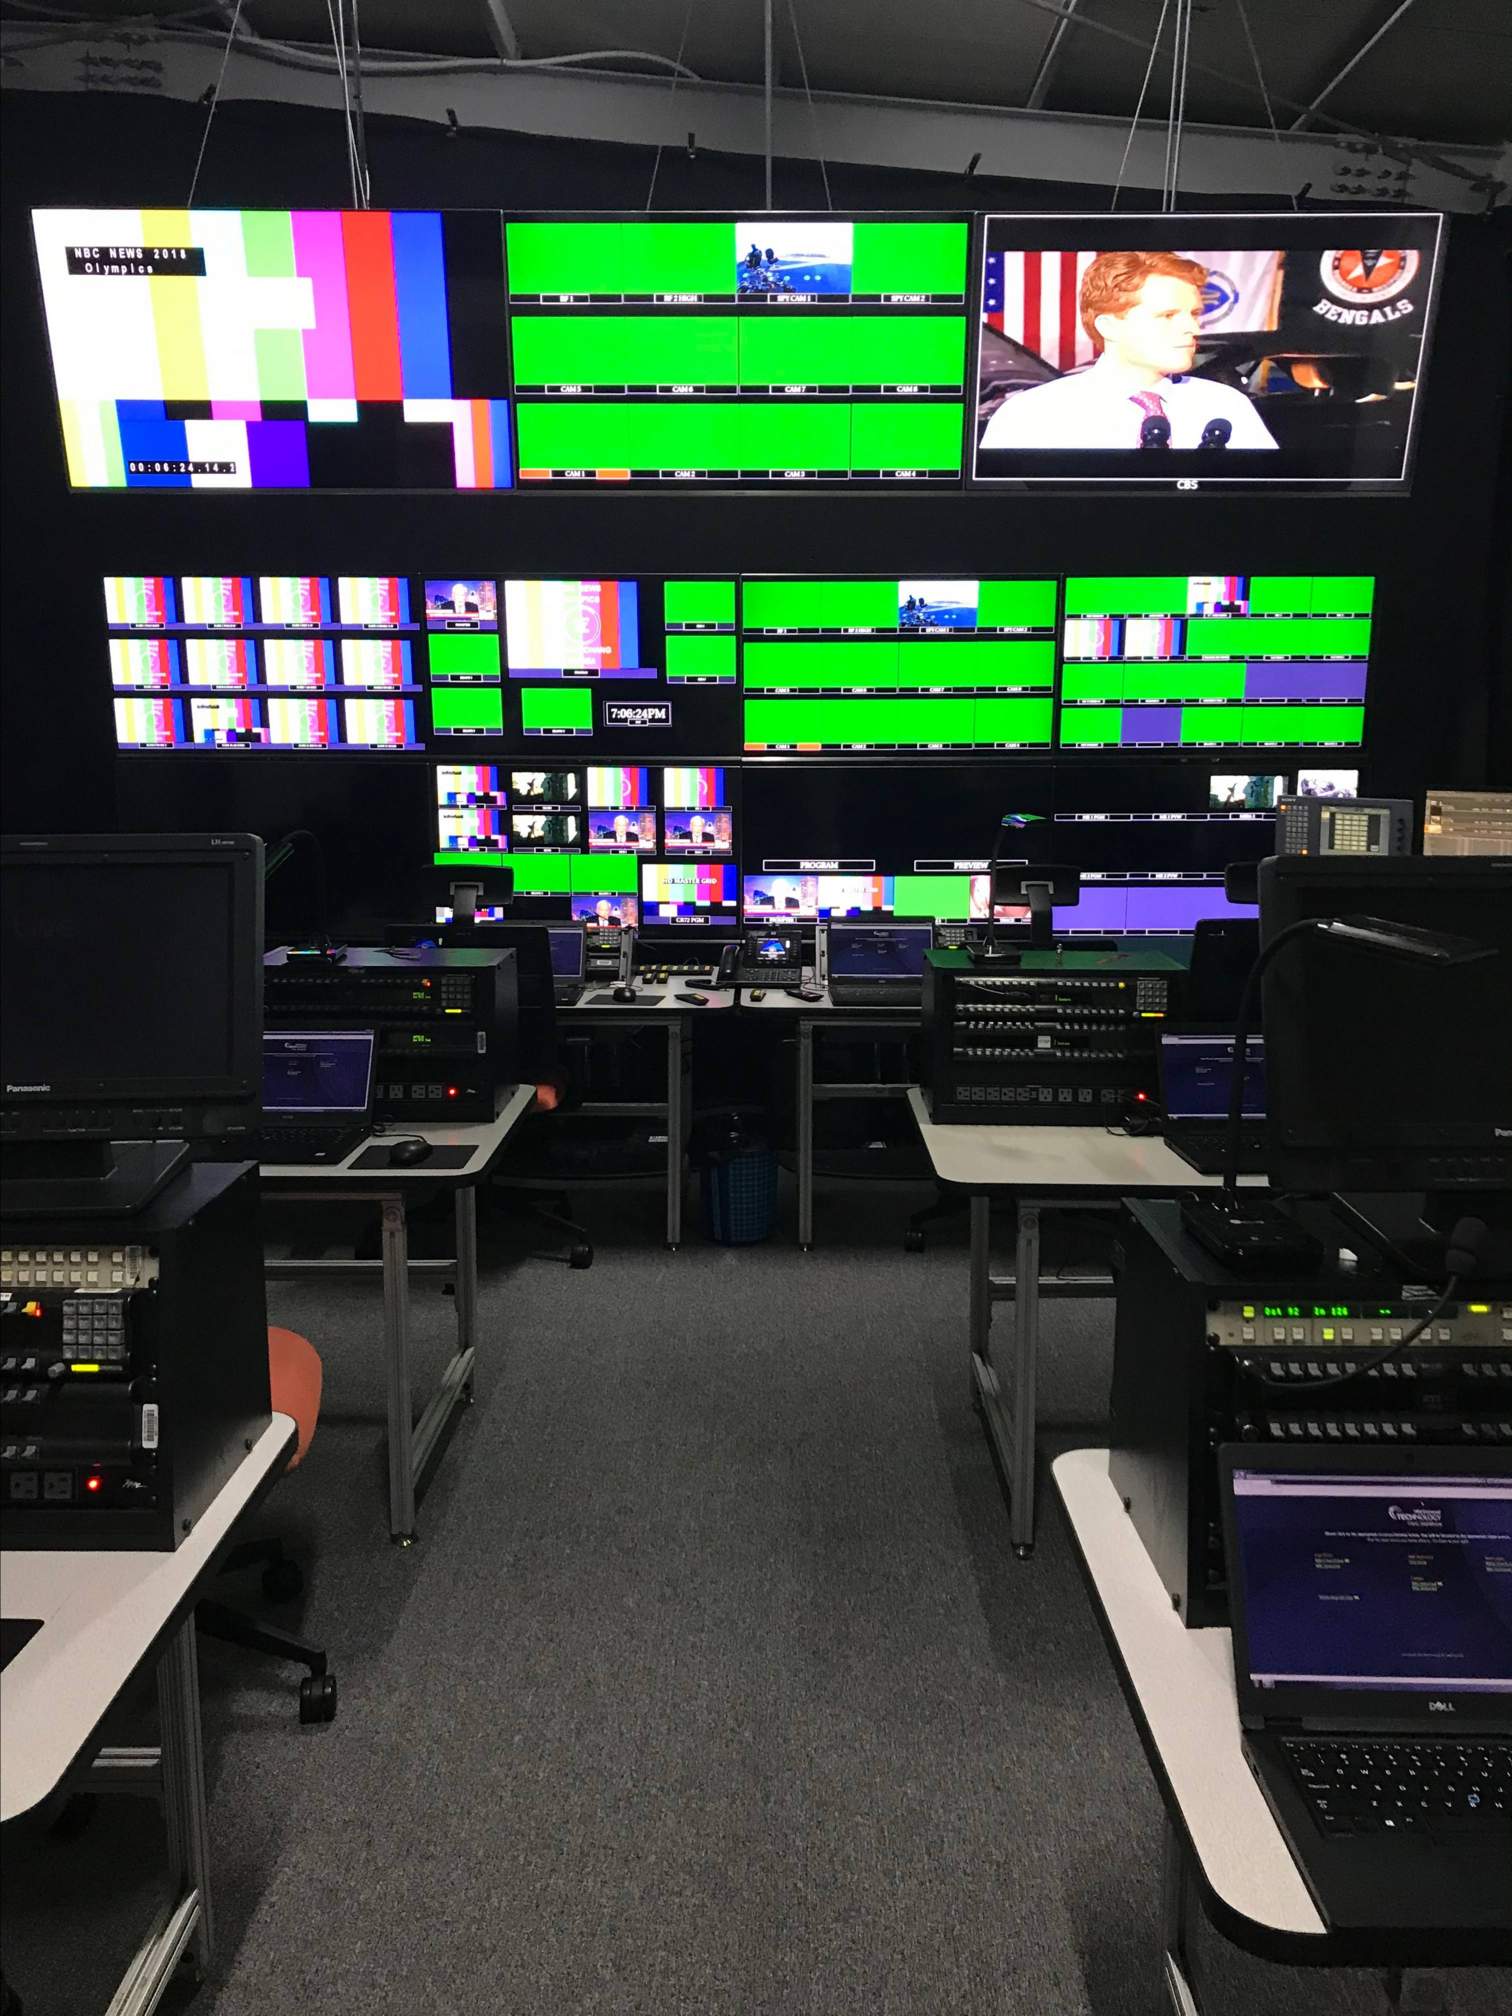 command center, screens